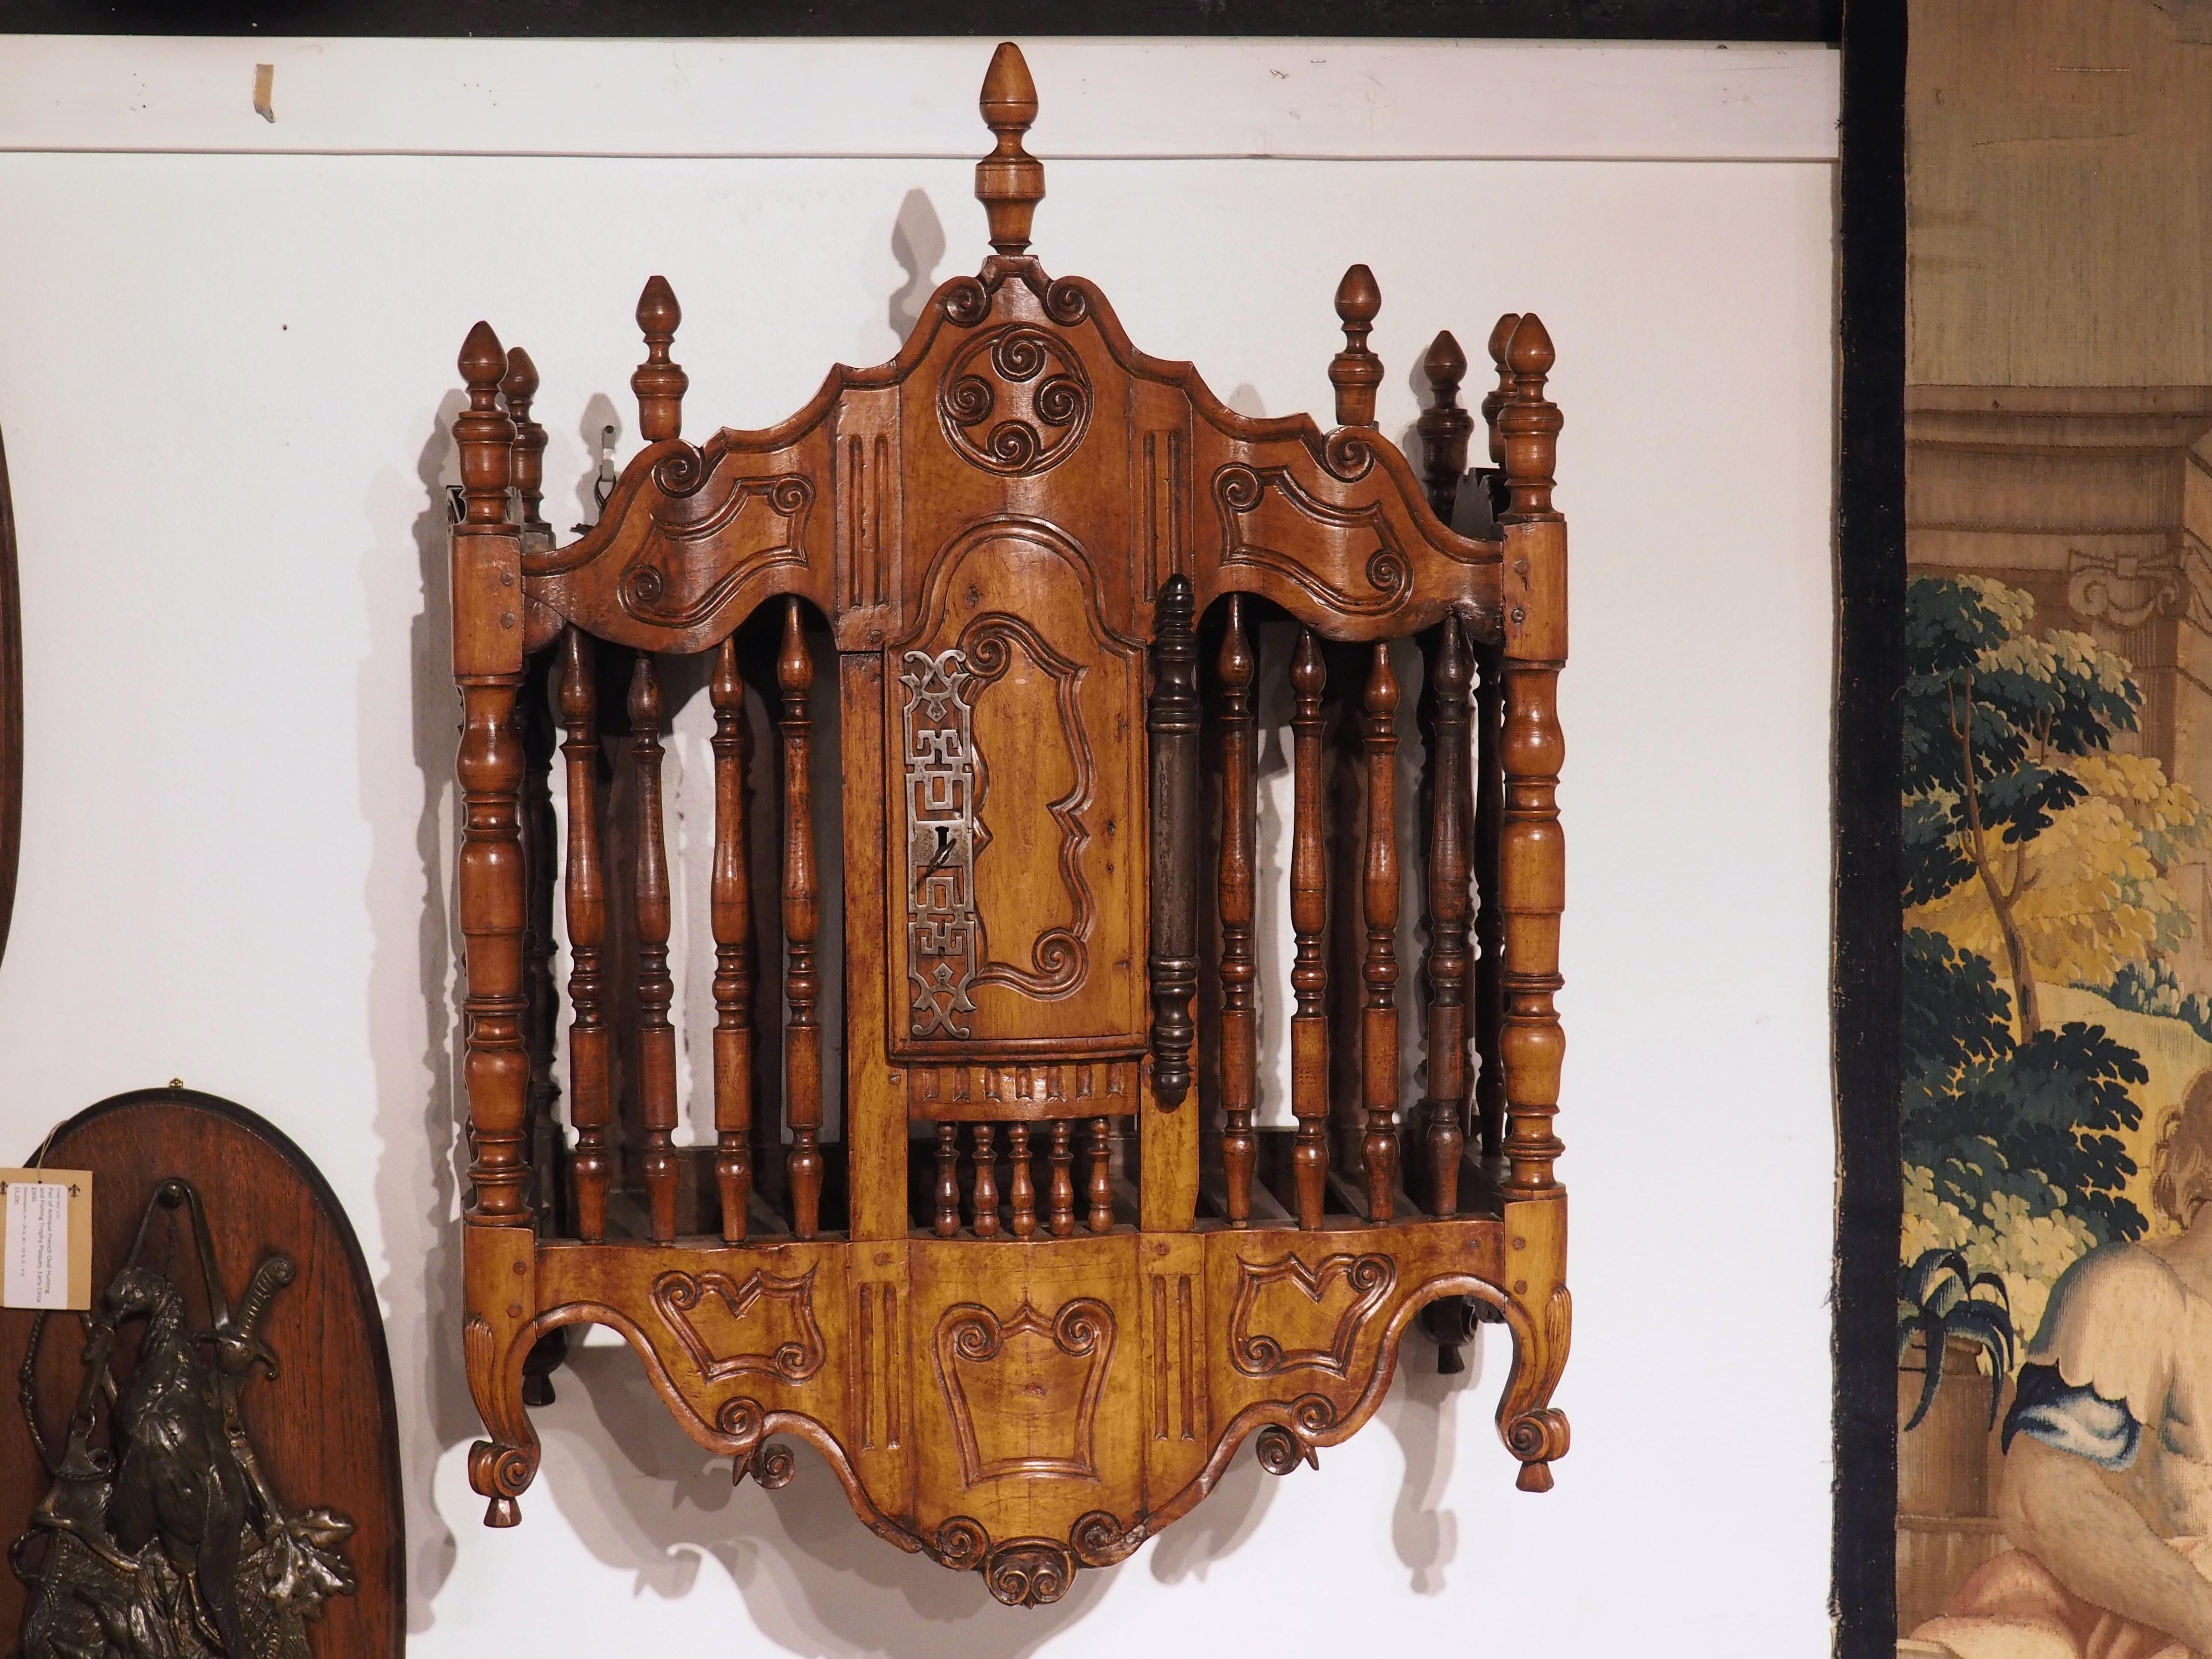 Diese um 1760 in Fourques aus Nussbaum handgeschnitzte Panetiere ist wohl eines der bekanntesten Möbelstücke aus der historischen französischen Provinz Provence. Die gedrechselten Baluster, die den größten Teil der Vorderseite und der Seiten